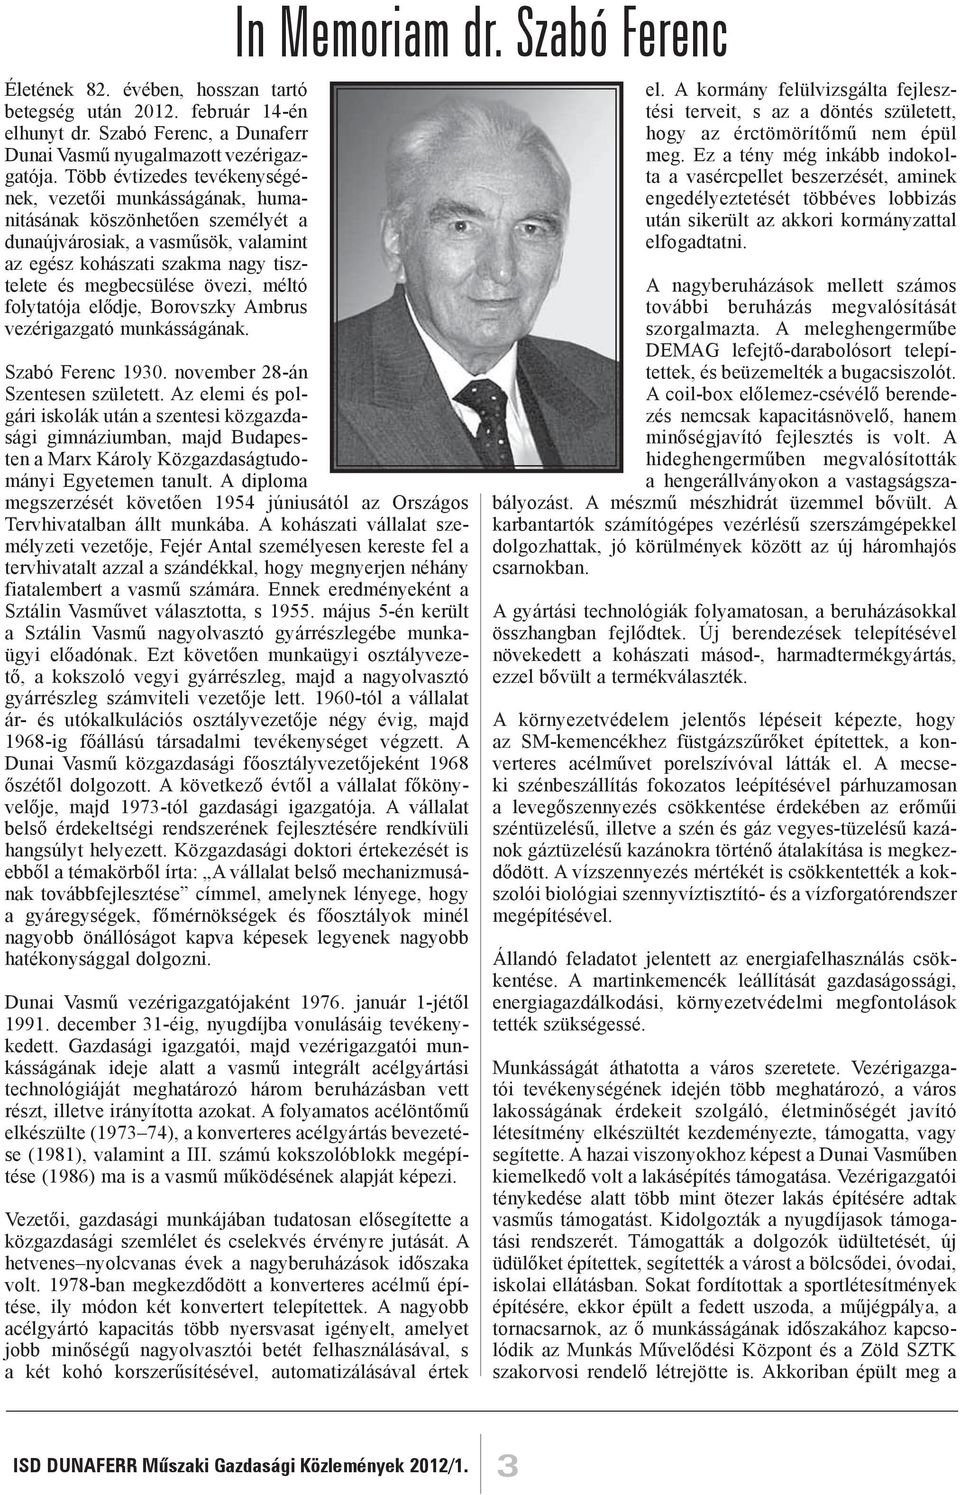 méltó folytatója elődje, Borovszky Ambrus vezérigazgató munkásságának. In Memoriam dr. Szabó Ferenc Szabó Ferenc 1930. november 28-án Szentesen született.